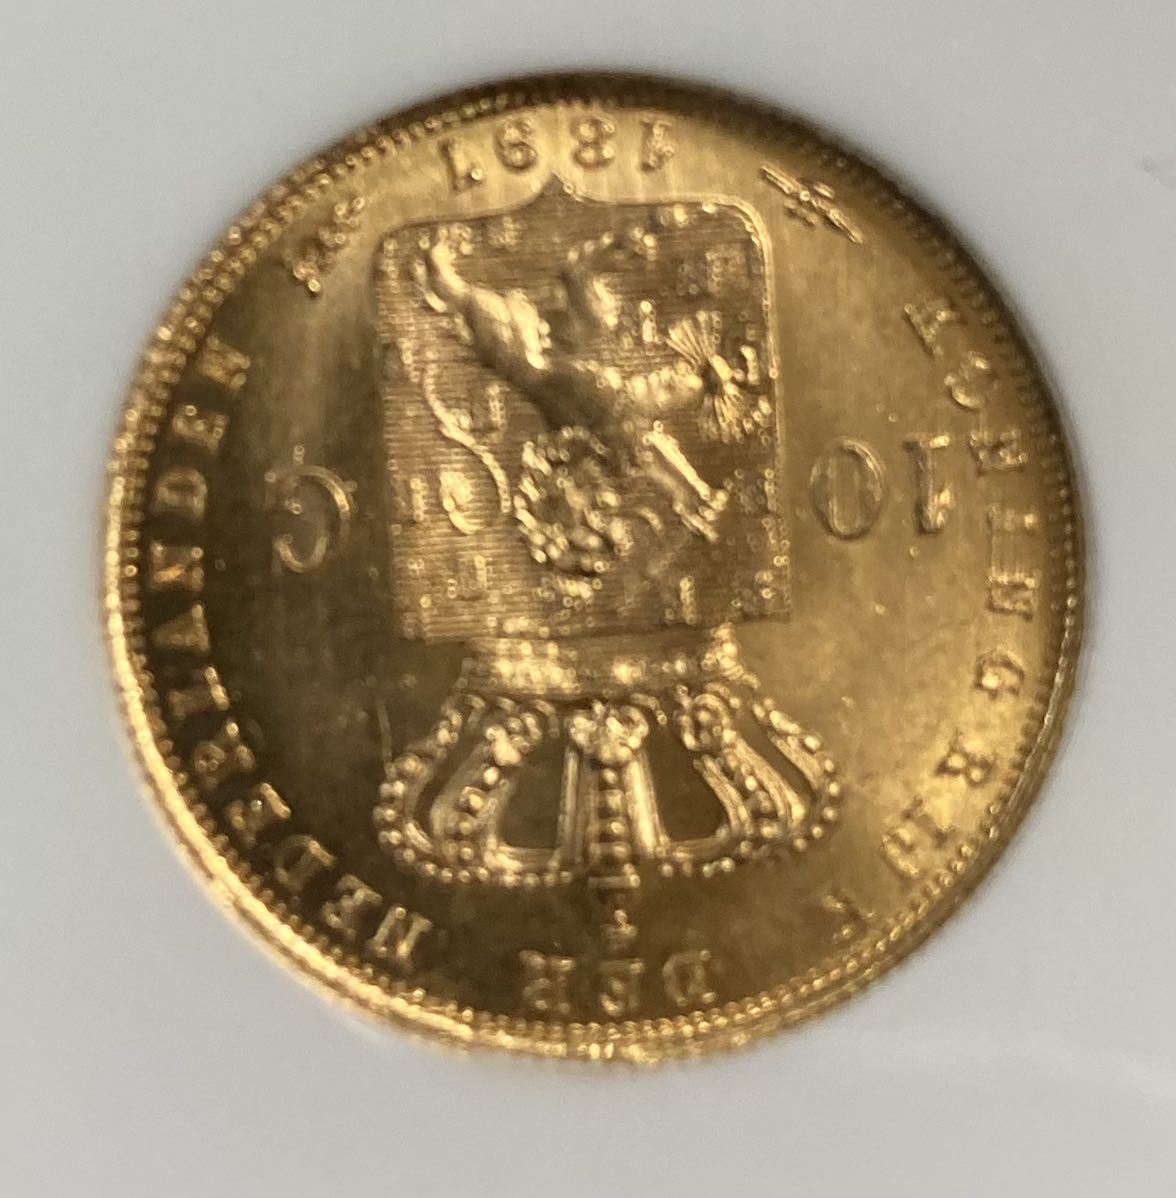 【破格値下げ】 【アンティーク】1897年/オランダ/金貨/ゴールド 